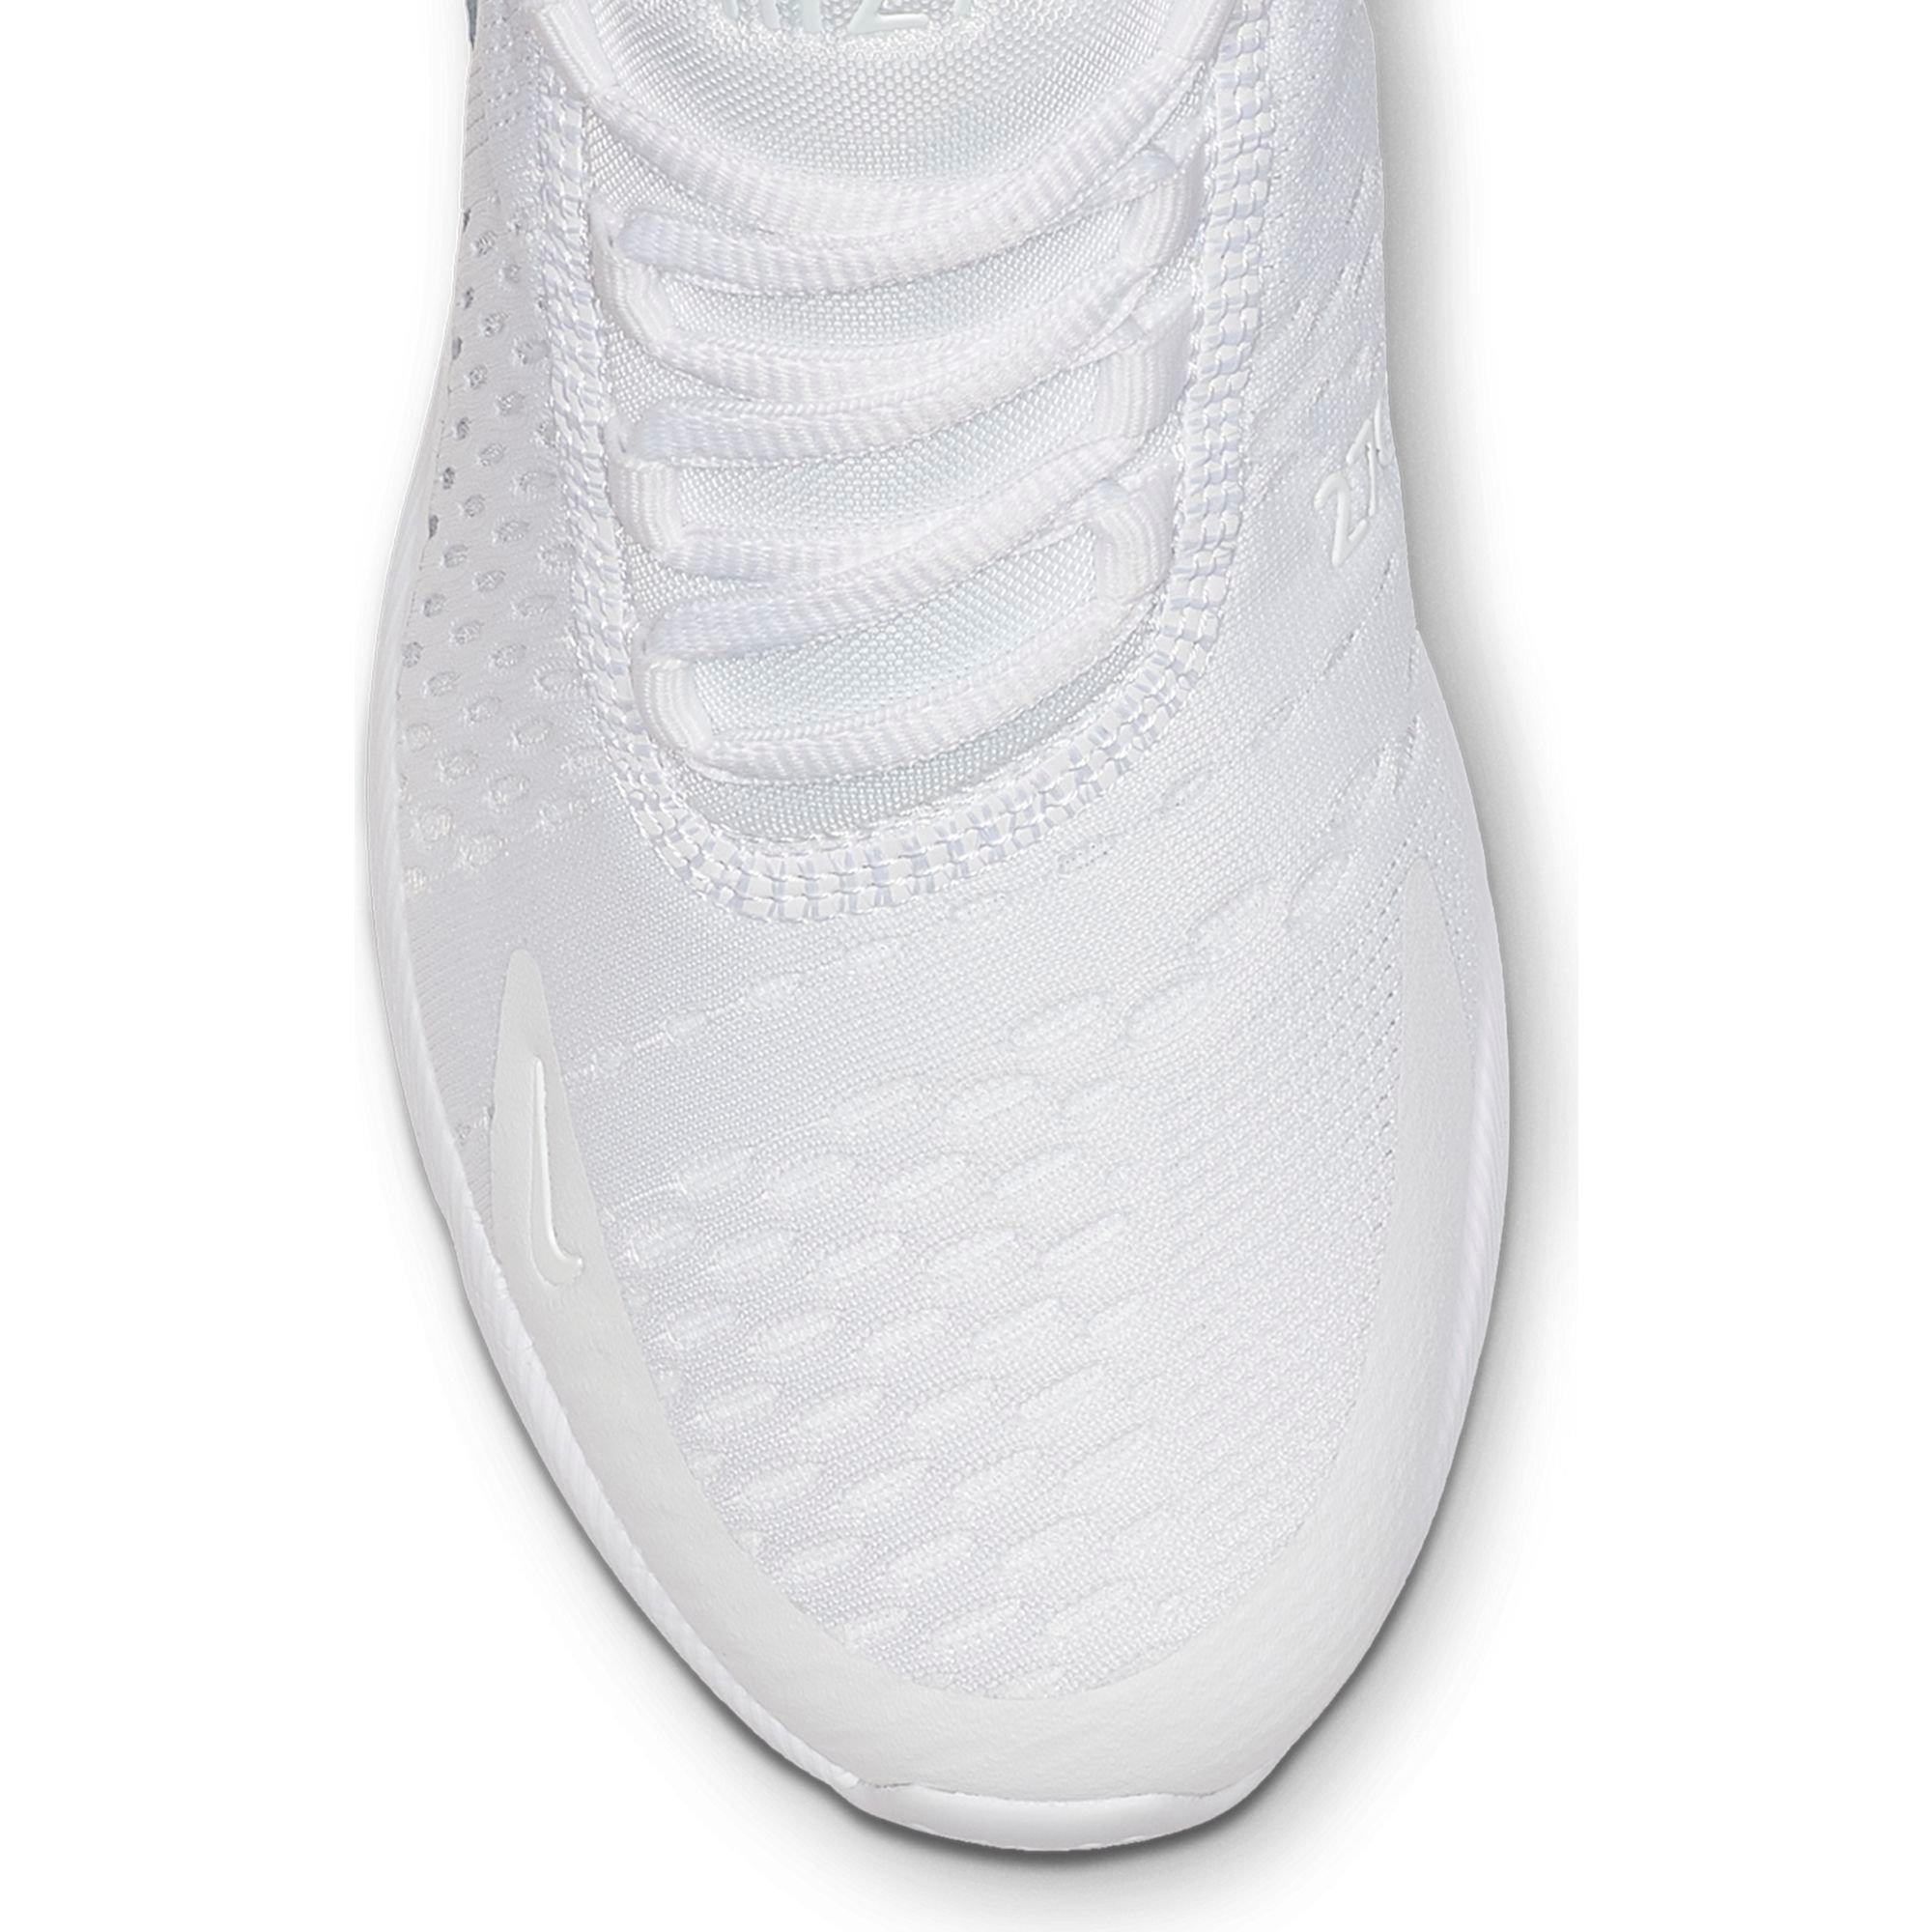 Nike Air Max 270 GS 'White Silver